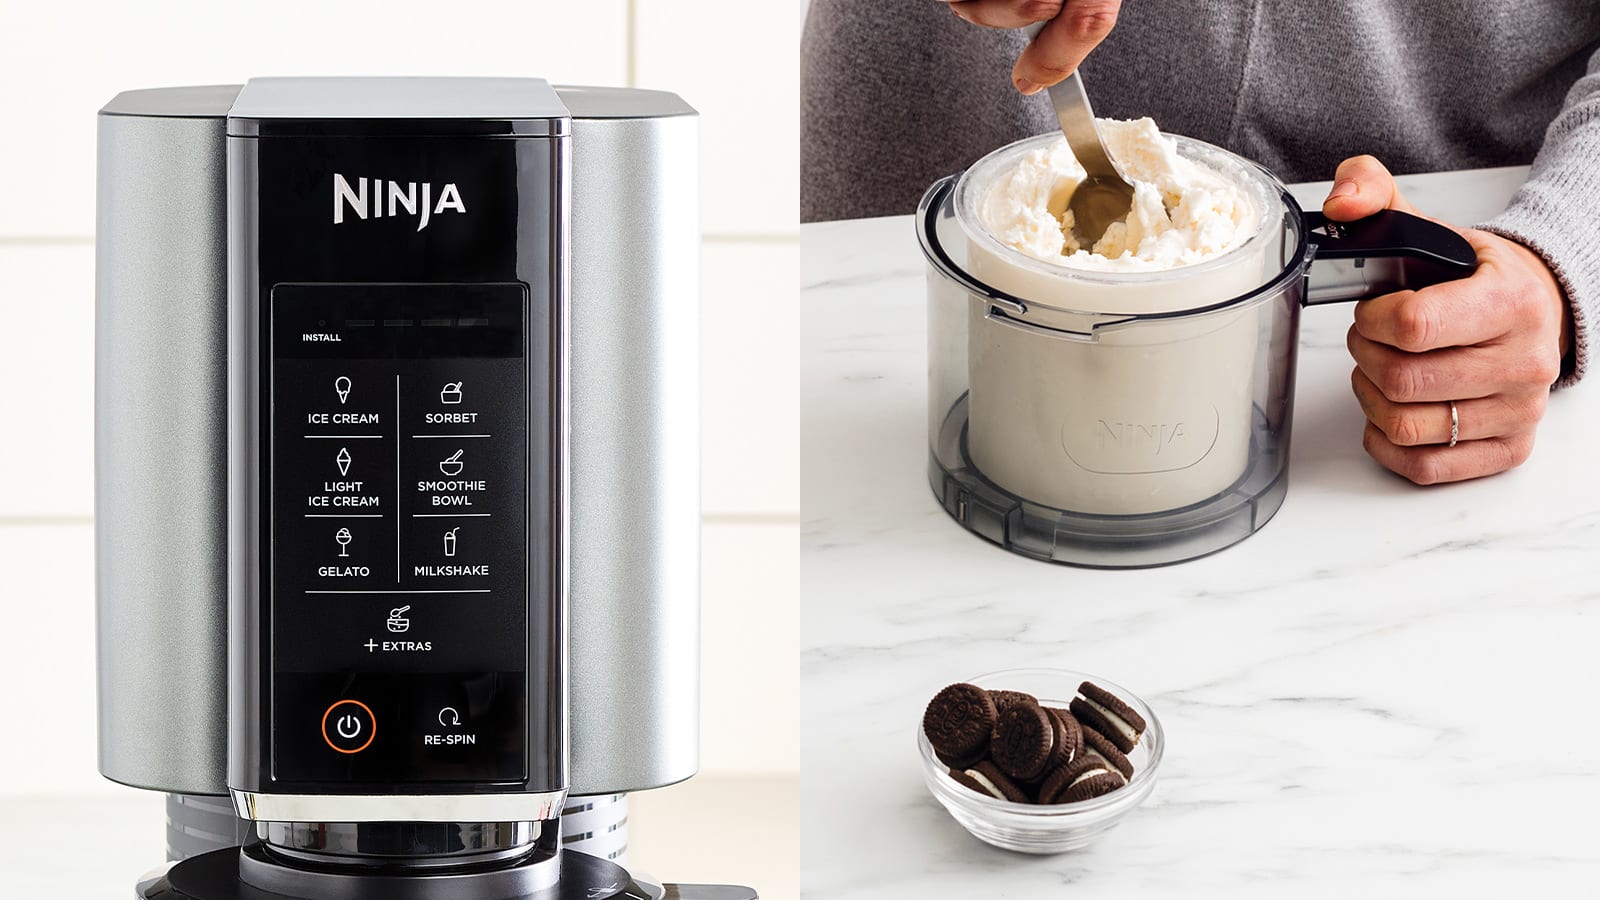 Ninja Creami, una innovadora heladera multifunción - Noticias de Electro en  Alimarket